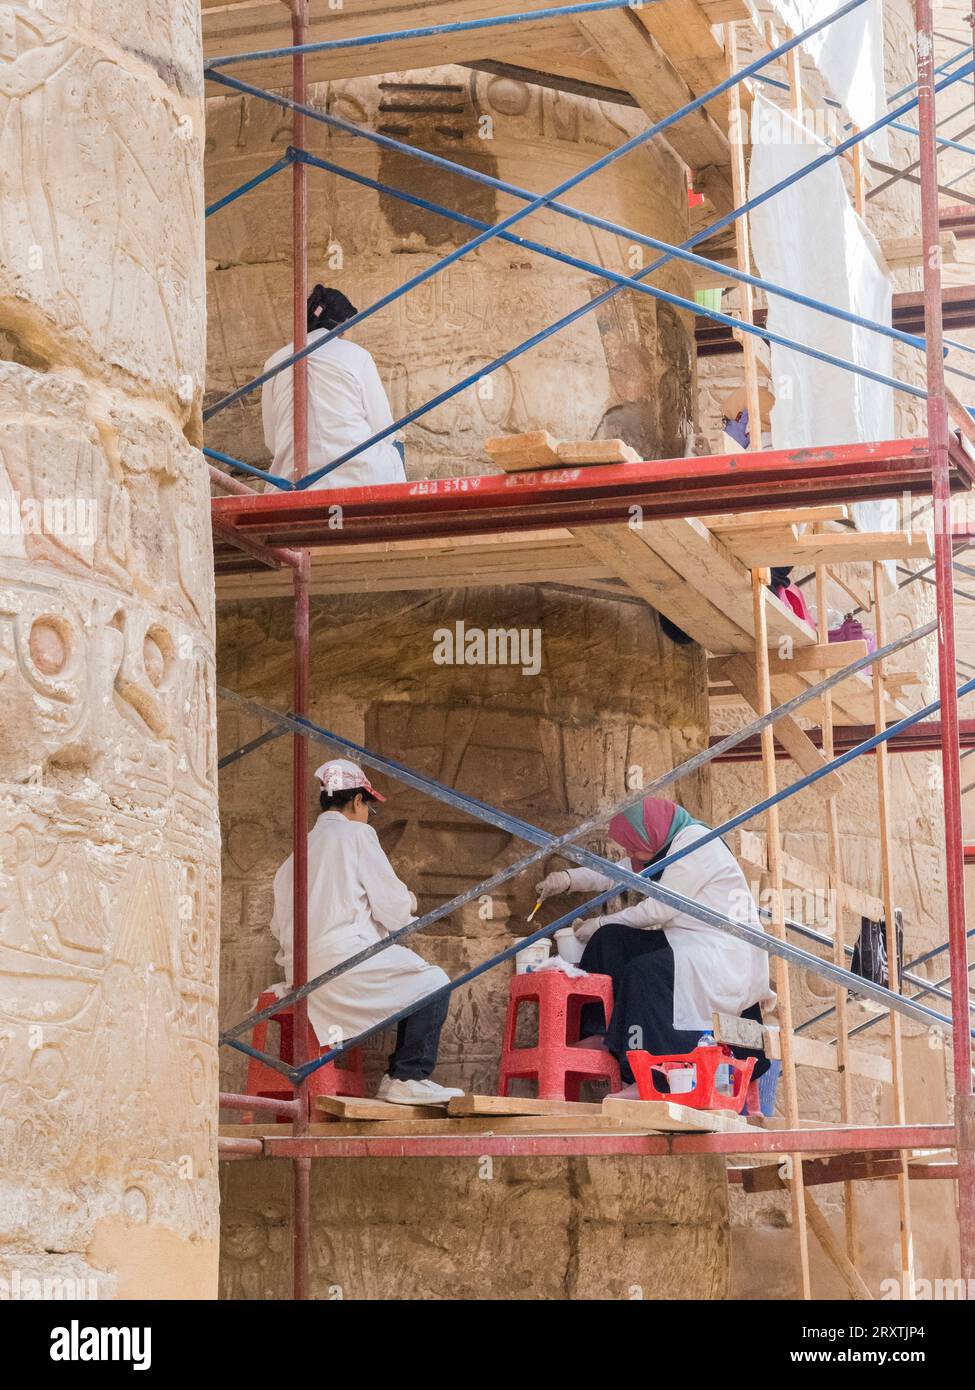 Les ouvriers du complexe du temple de Karnak, un vaste mélange de temples, de pylônes, de chapelles et d'autres bâtiments, Louxor, Thèbes, Egypte, Afrique du Nord, Afrique Banque D'Images